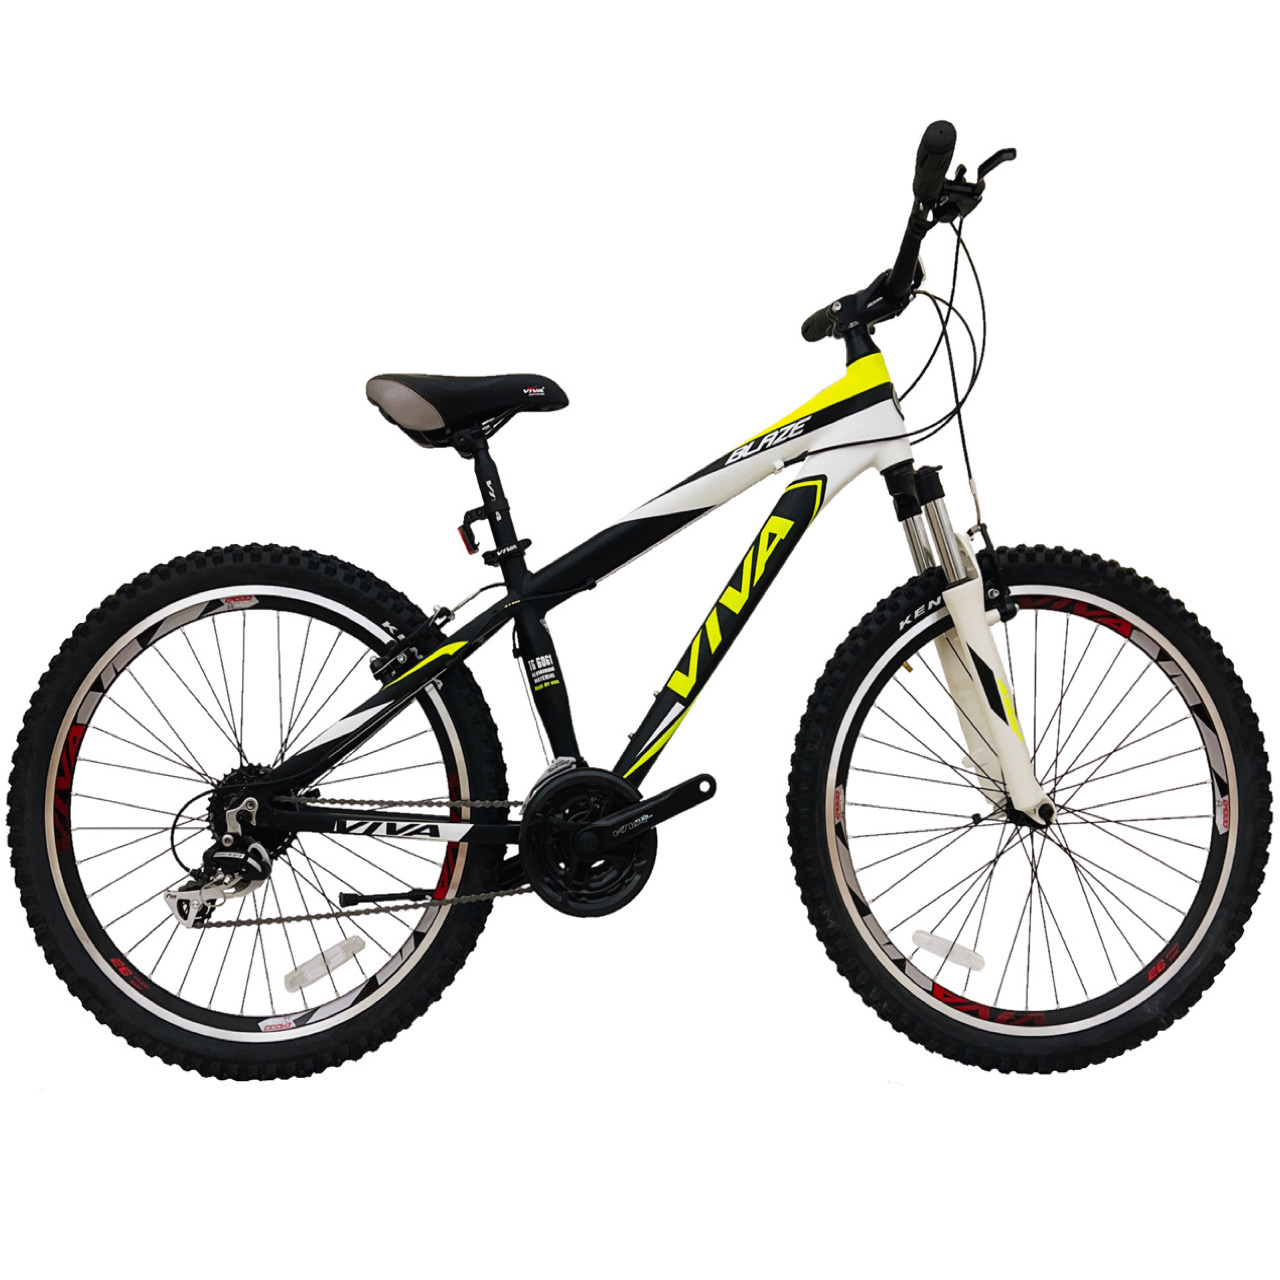 نکته خرید - قیمت روز دوچرخه کوهستان ویوا مدل BLAZE کد 15 سایز 26 خرید